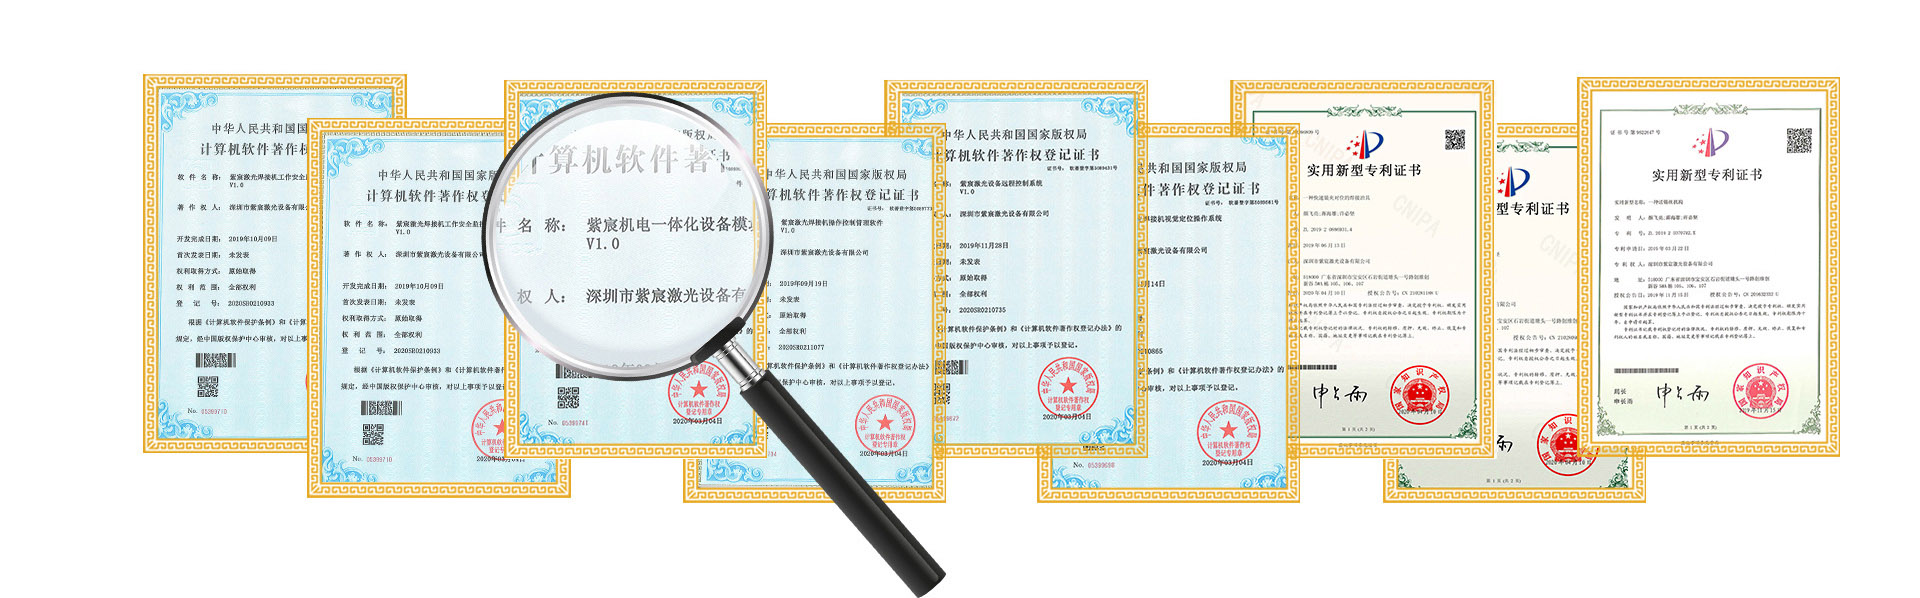 激光焊接设备专利证书